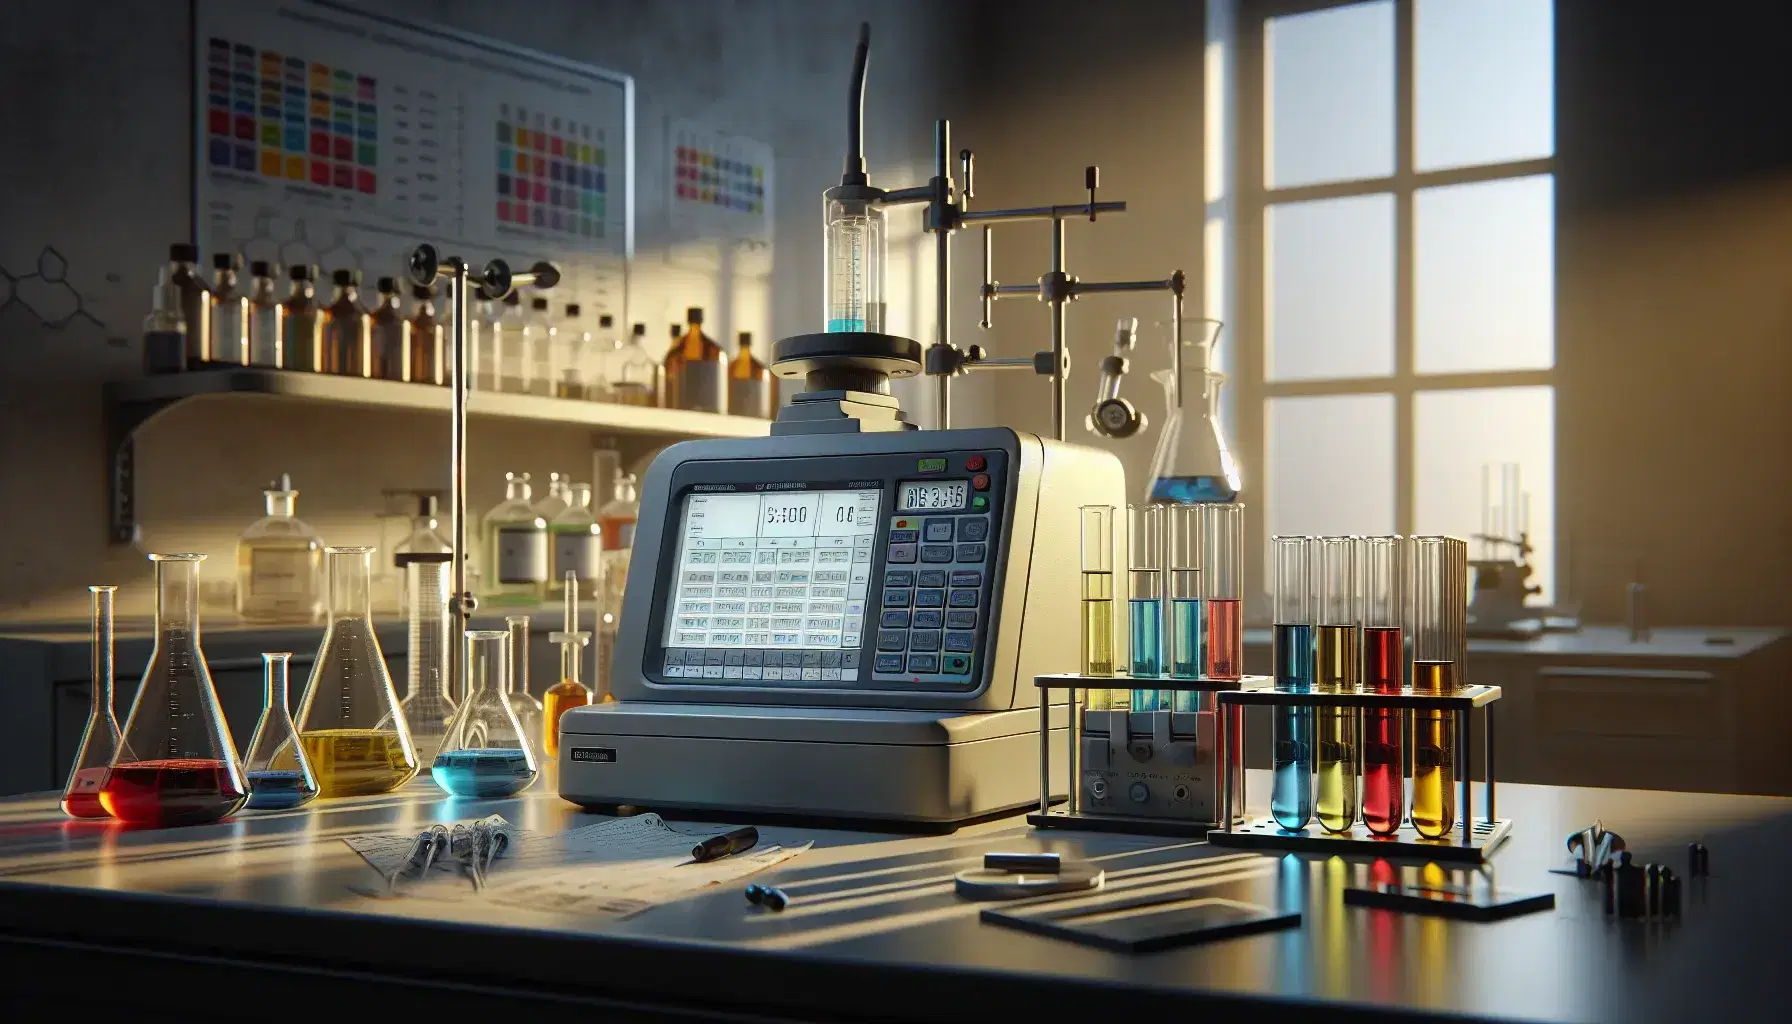 Laboratorio de química analítica con espectrofotómetro central, tubos de ensayo con líquidos coloridos y balanza analítica digital, reflejando limpieza y profesionalismo.